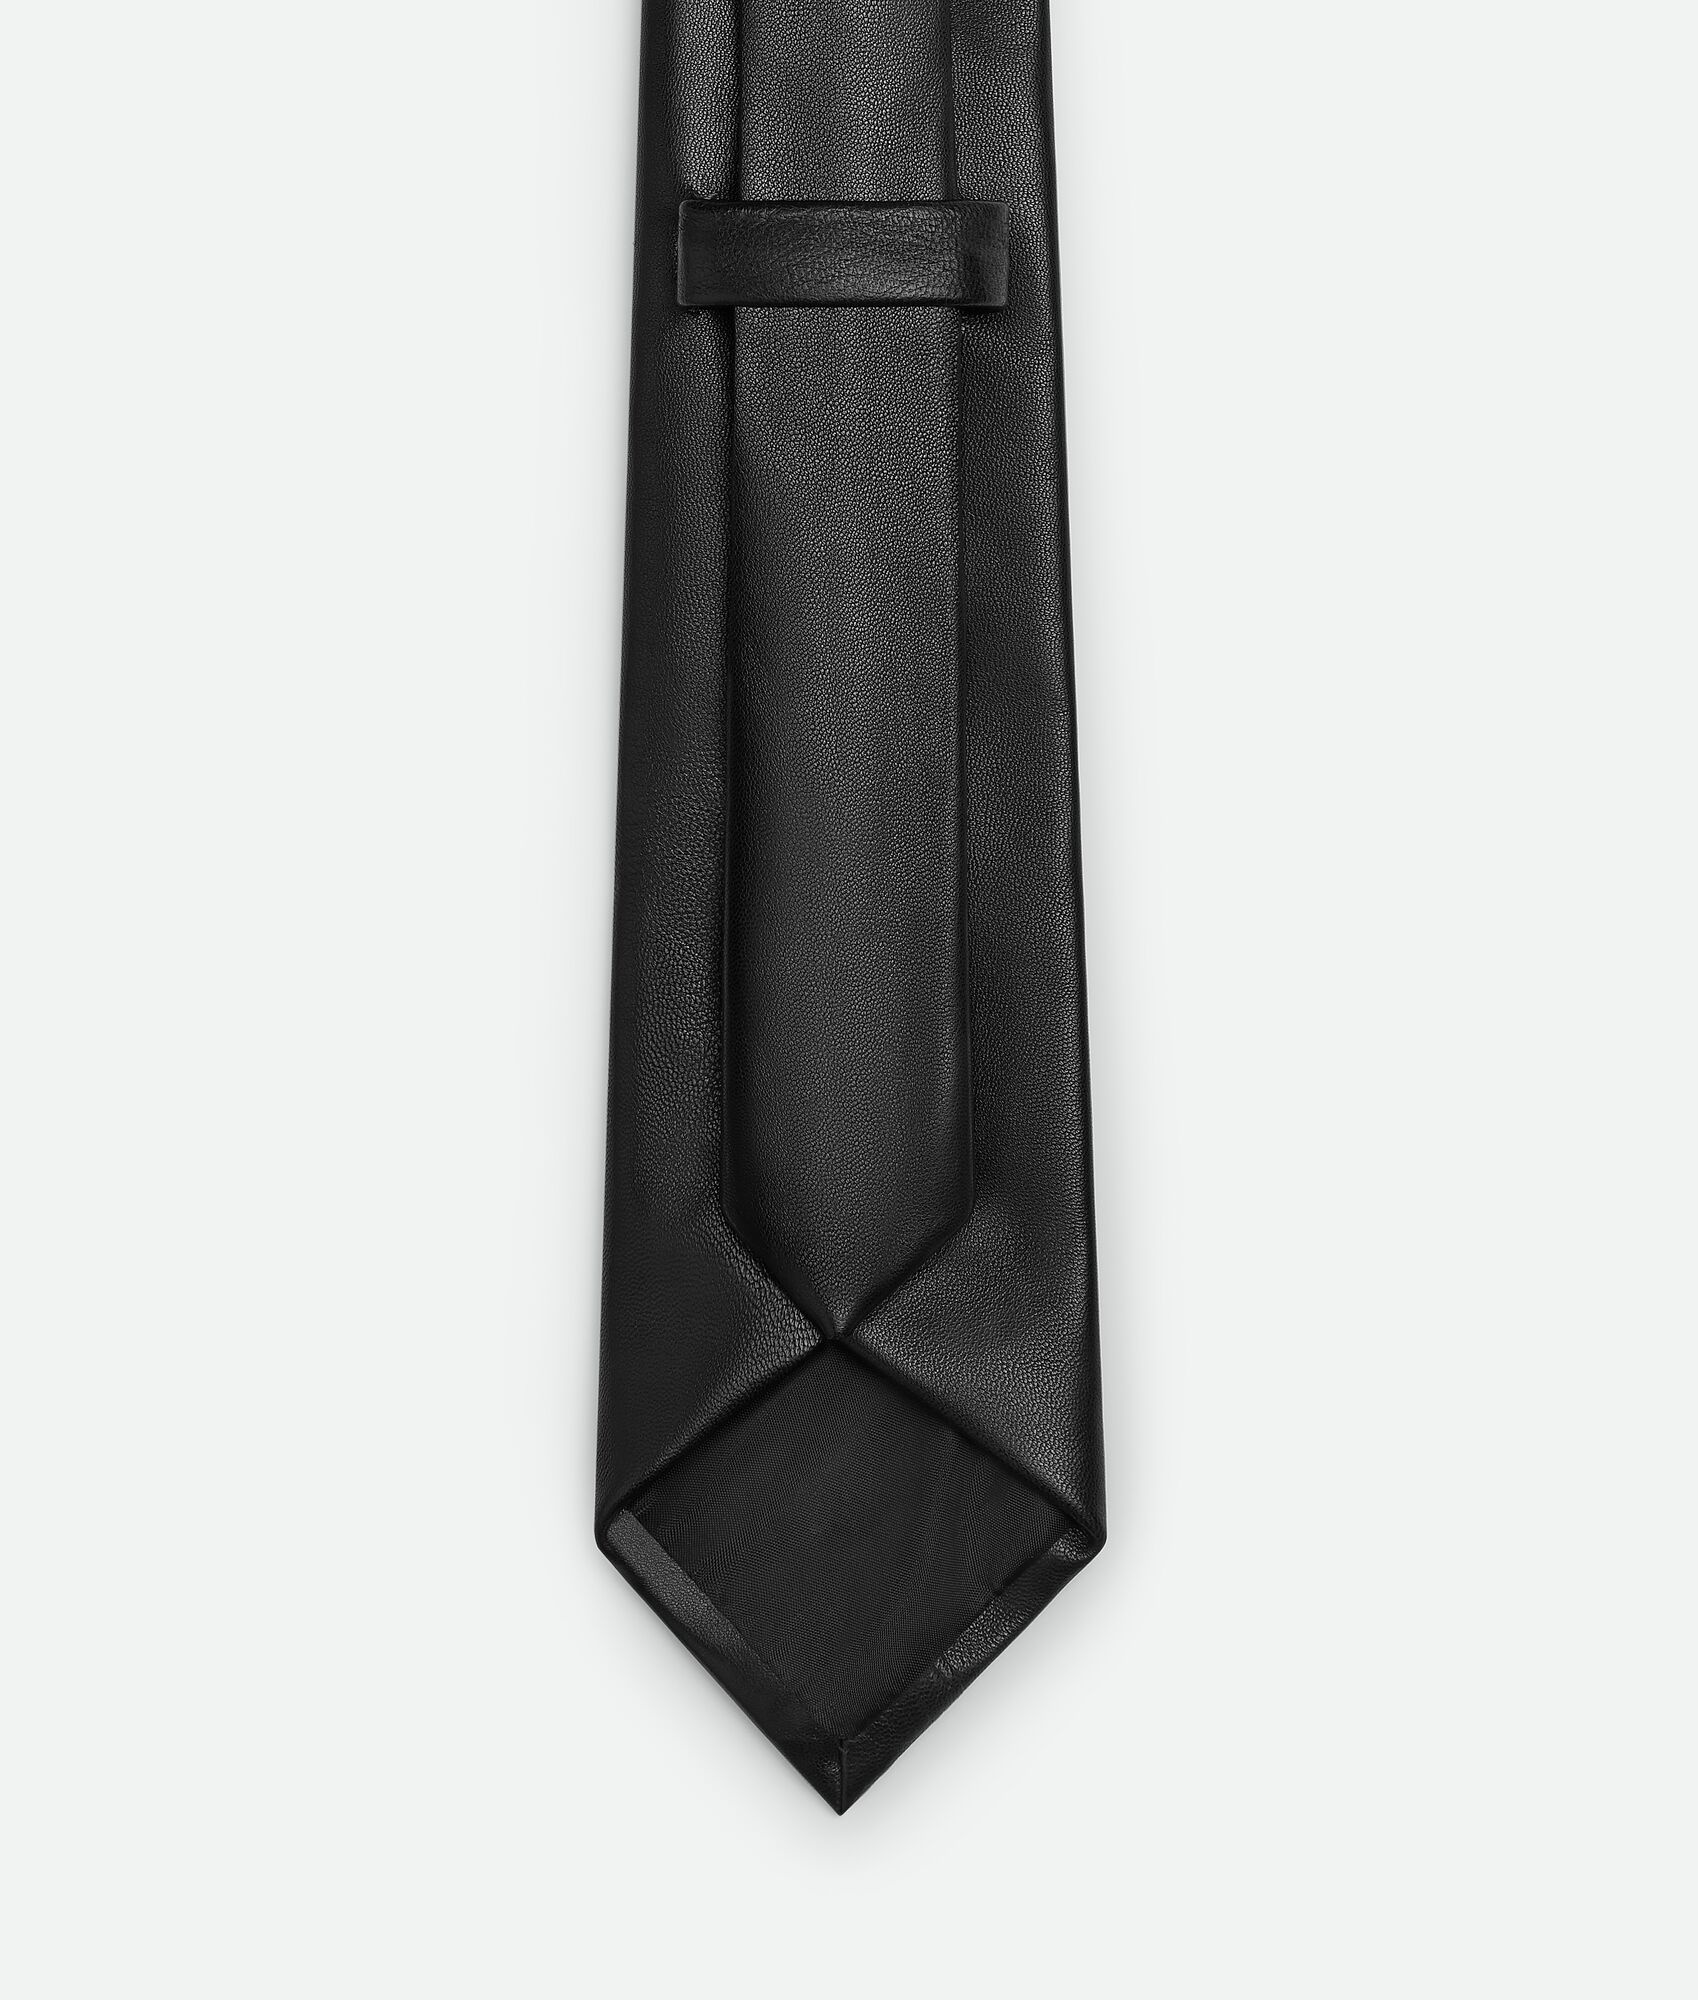 Leather Tie - 3